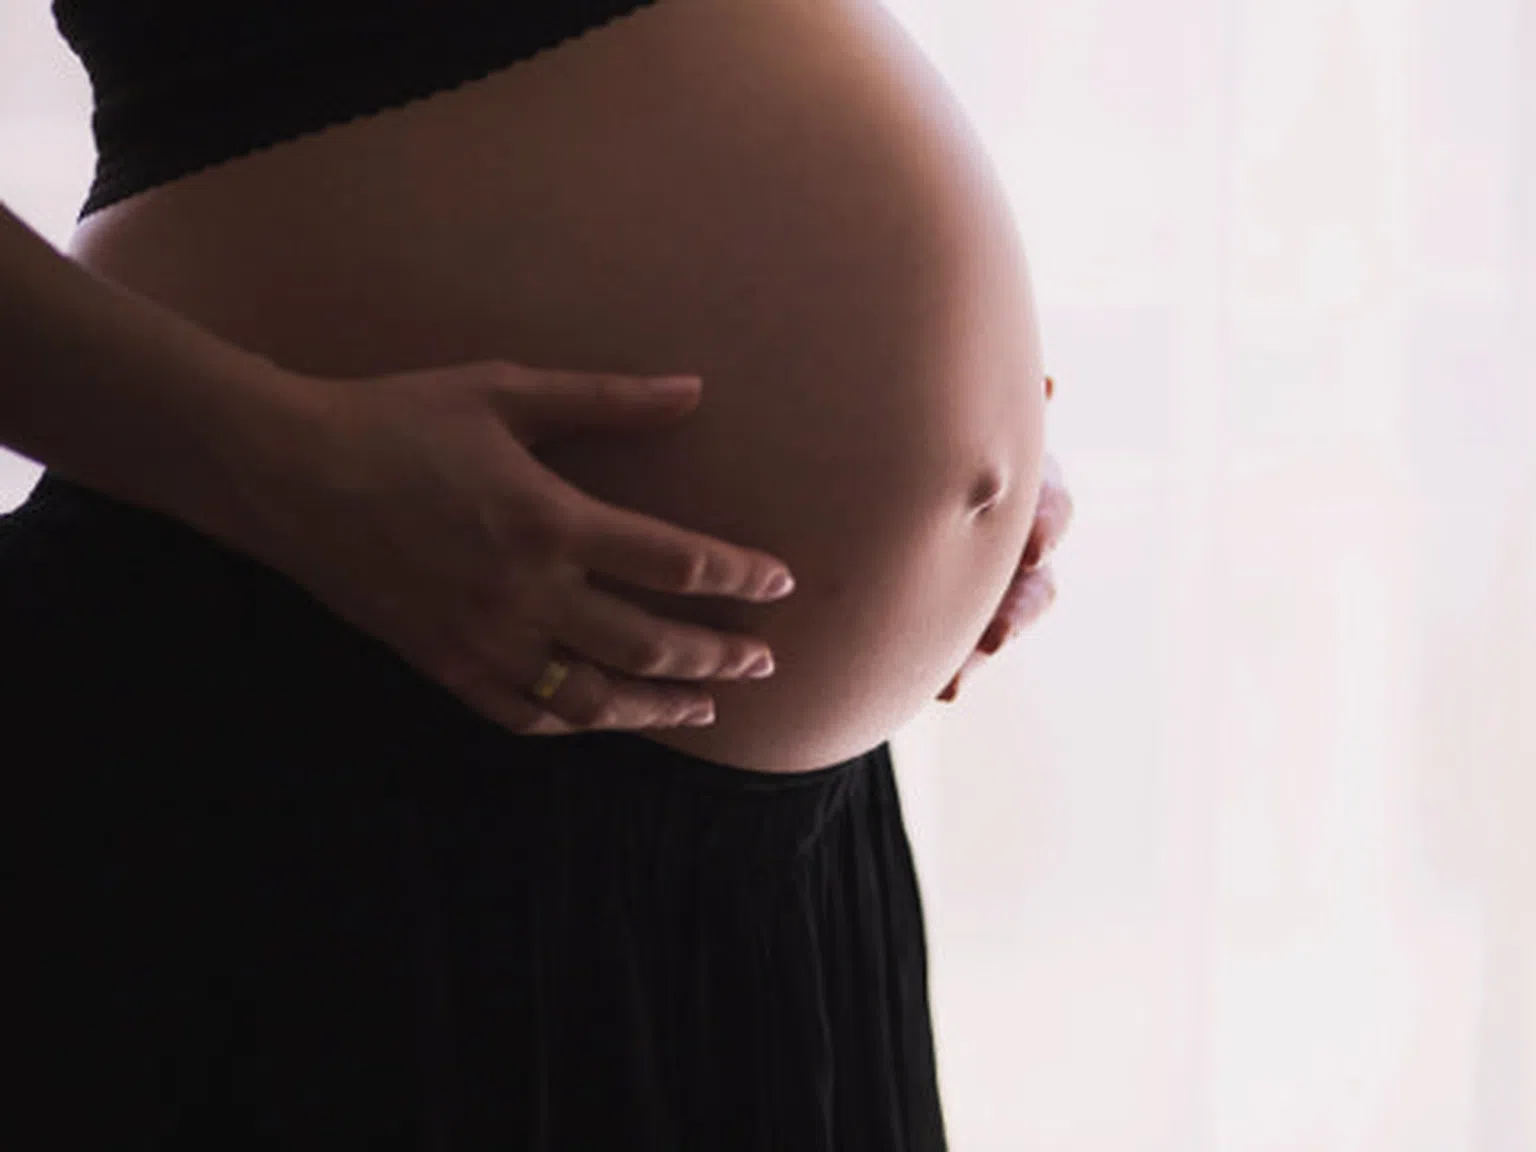 Ново проучване: 1 от всеки 6 хоспитализирани са неваксинирани бременни жени